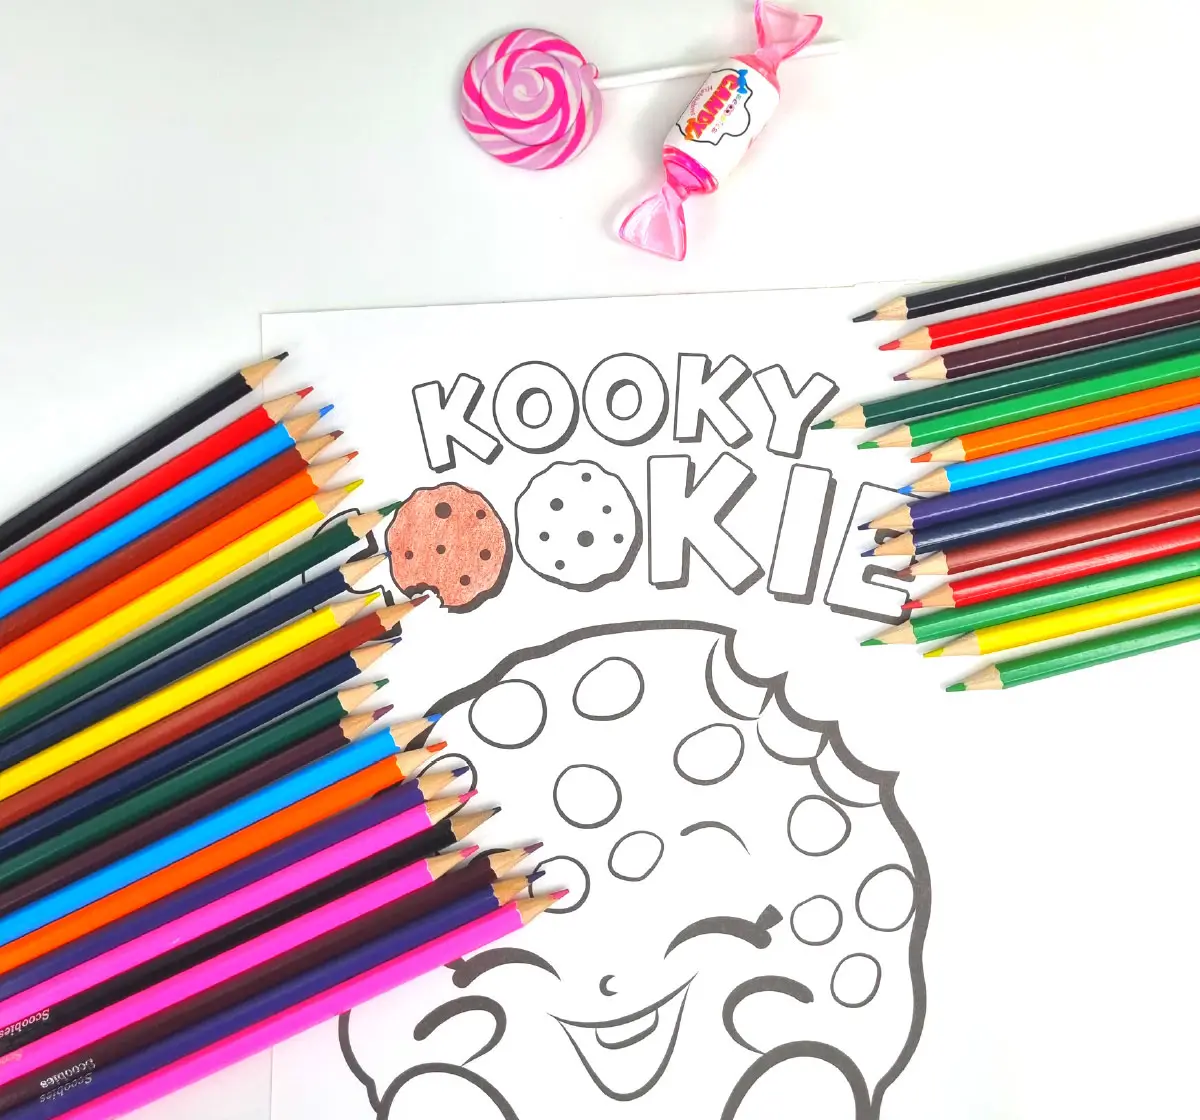 Scoobies Color Pencils Multicolour, 3Y+